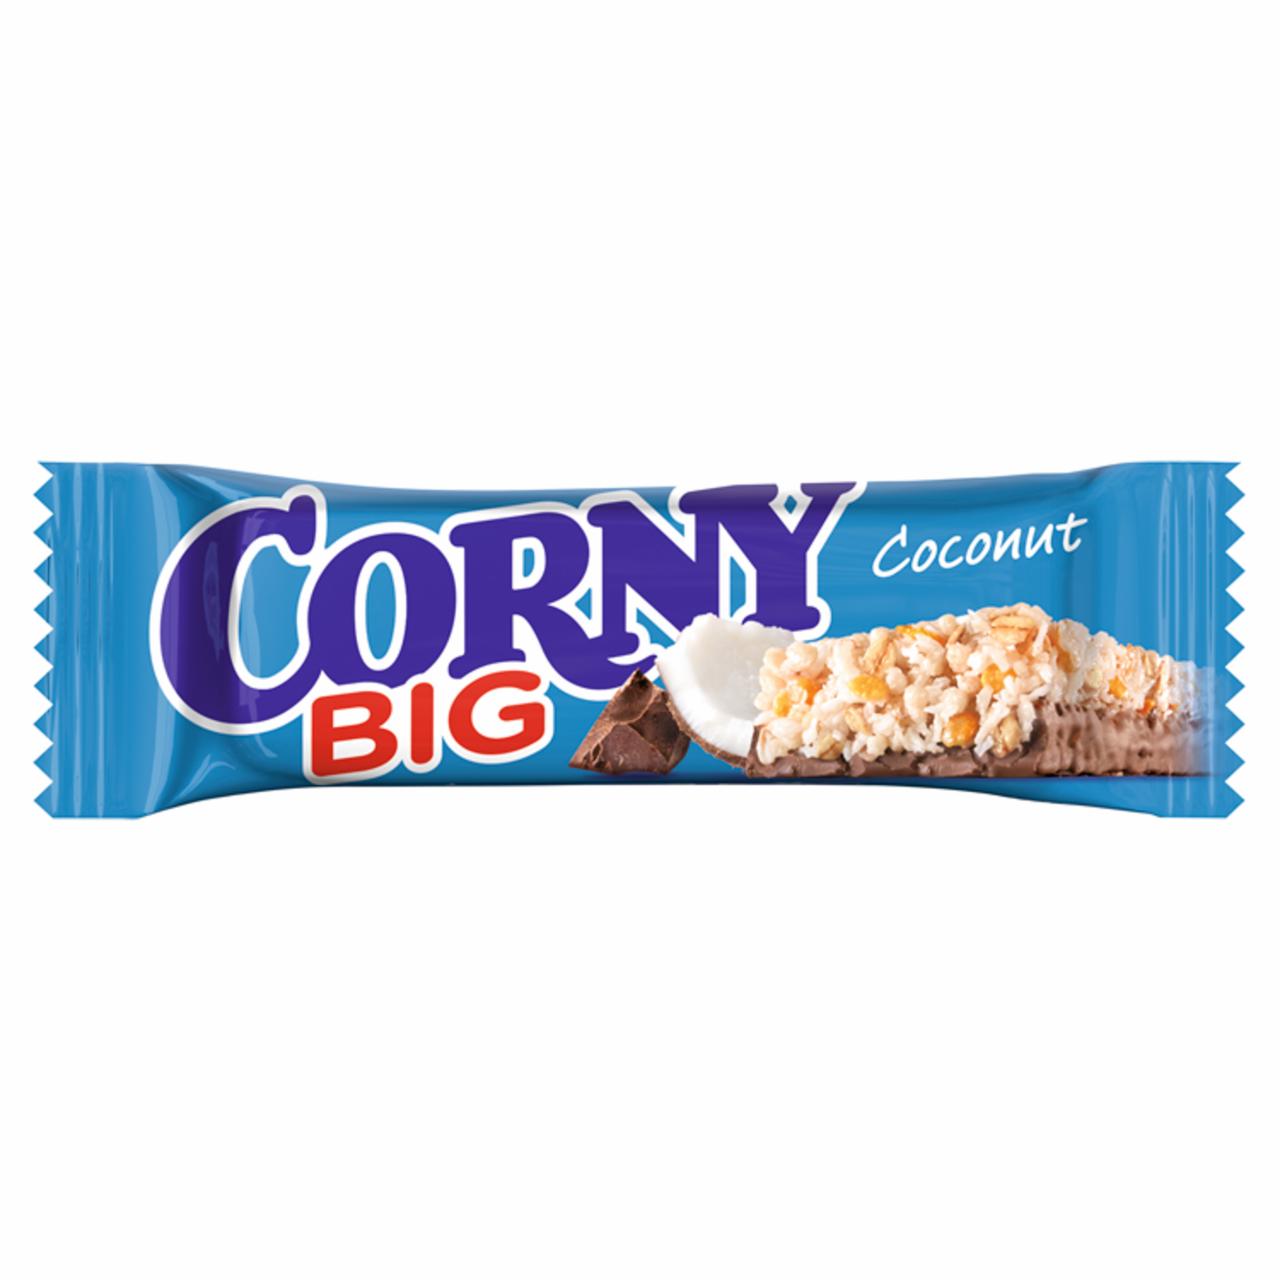 Képek - Corny Big kókuszos müzliszelet tejcsokoládéba mártva 50 g